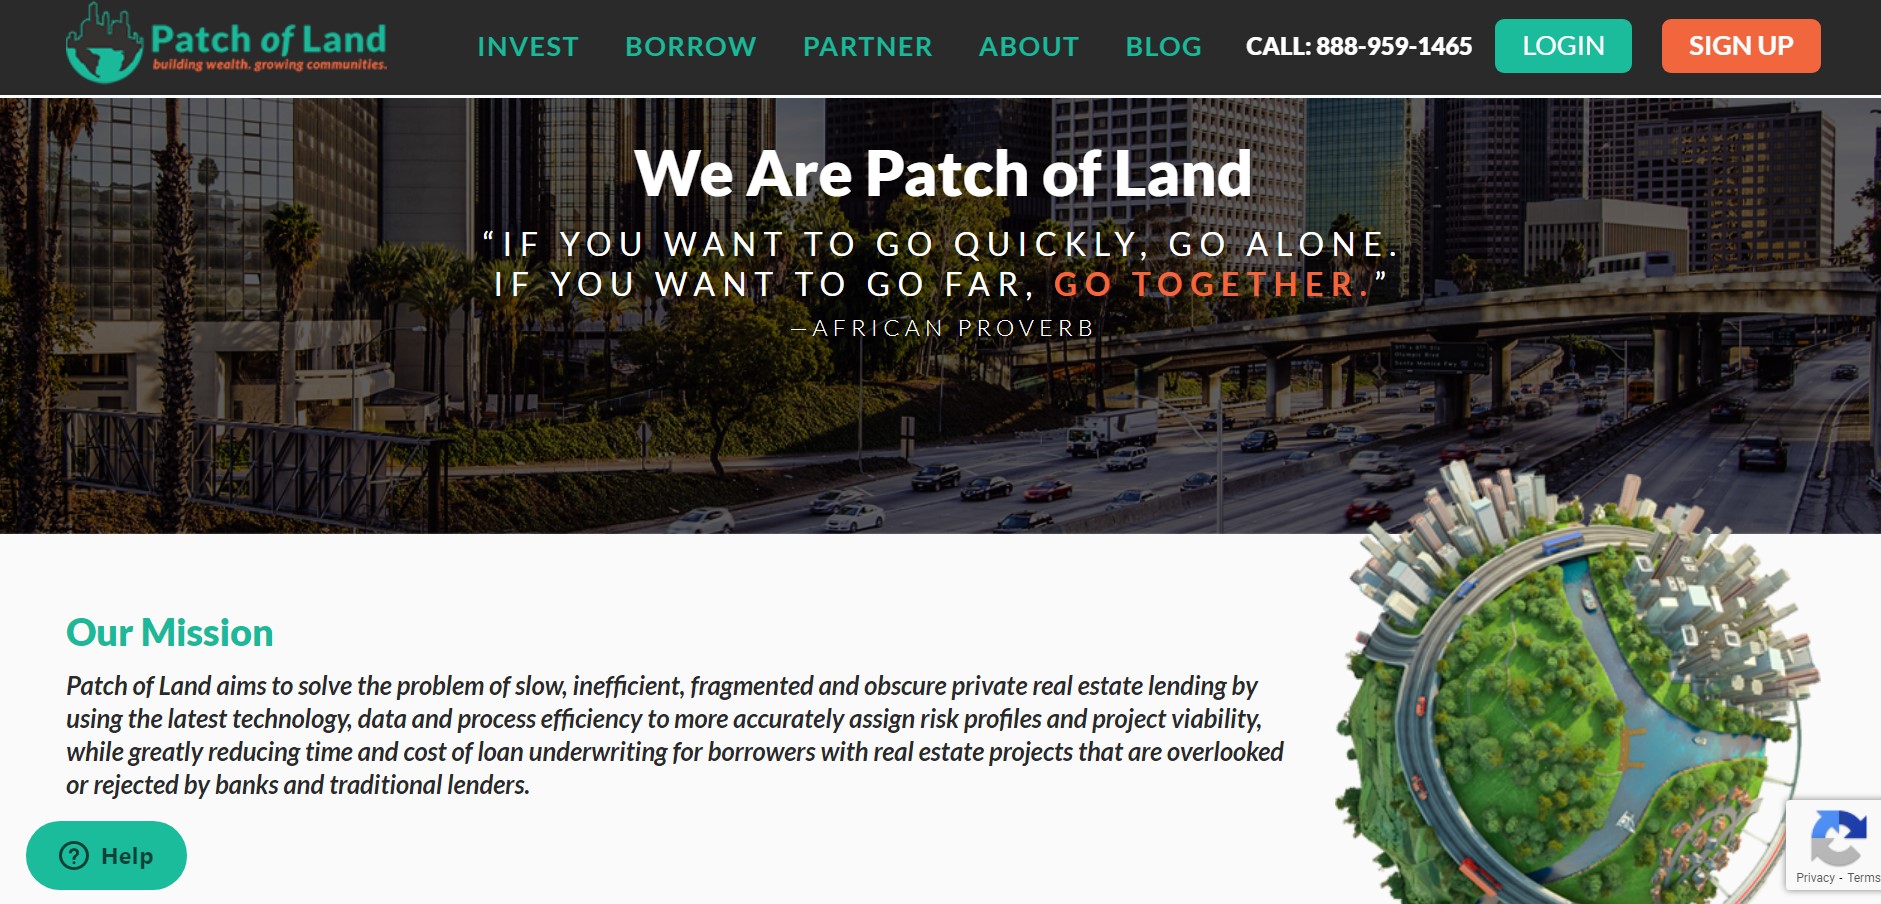 Patch of Land 是我们最喜欢的众筹网站之一。